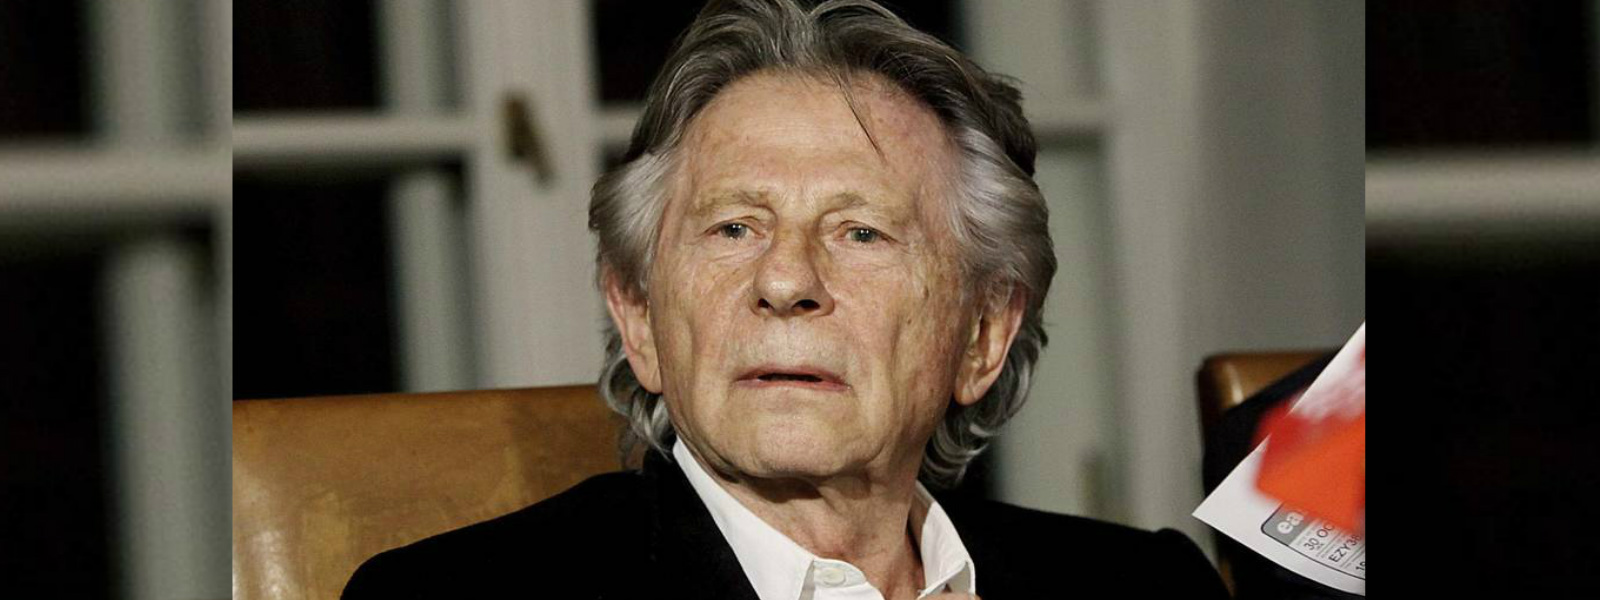 Roman Polanski threatens to sue Oscars organisers